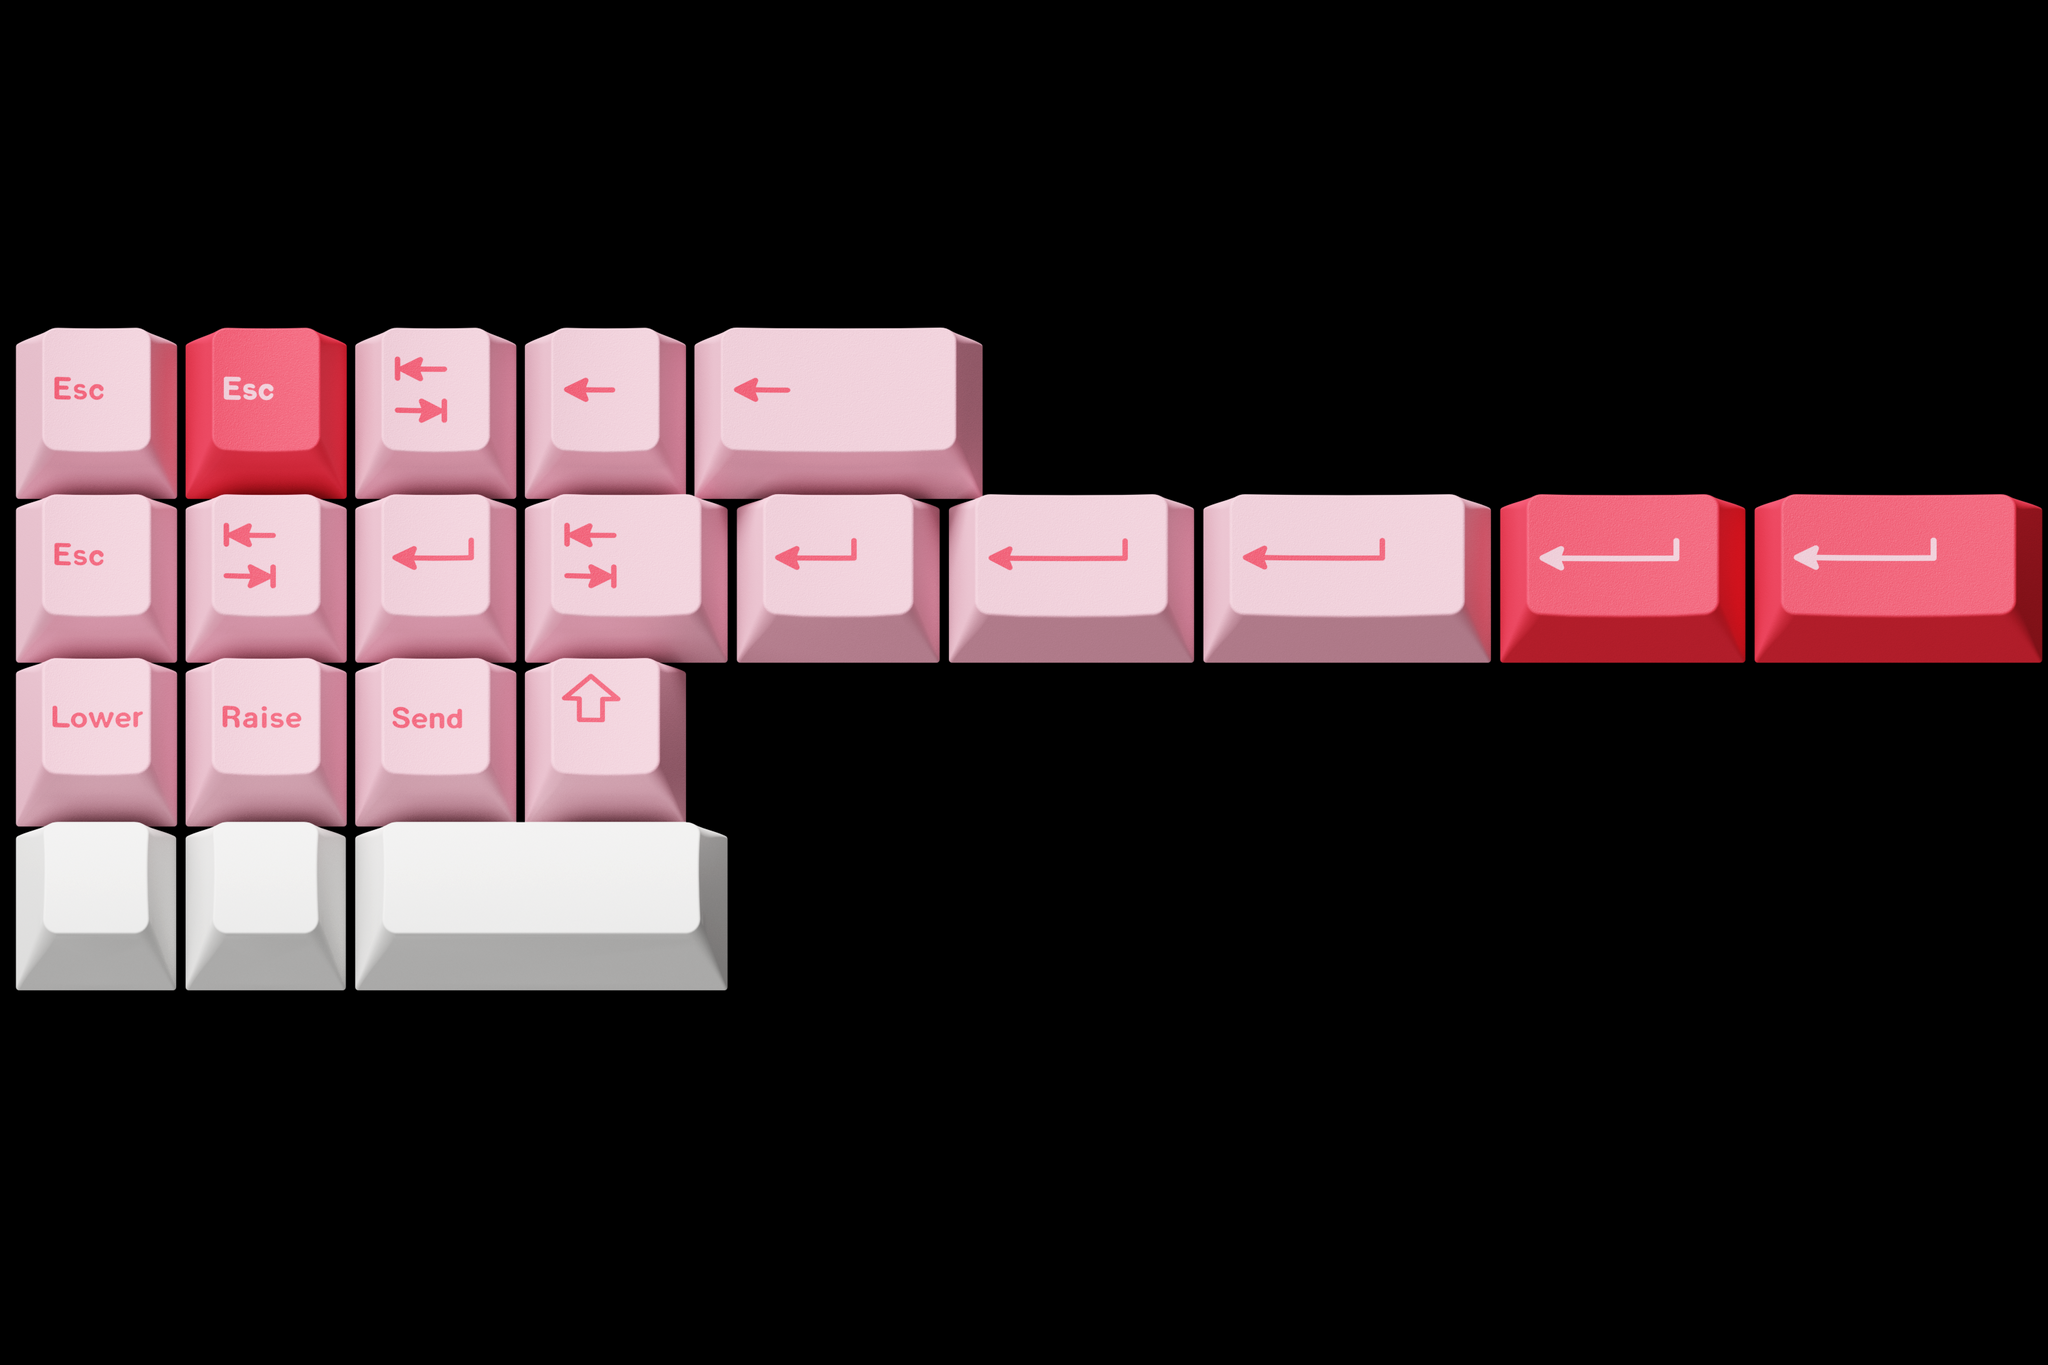 teclado-hazakura-rosado-teclado-gamer-Fancy_customs